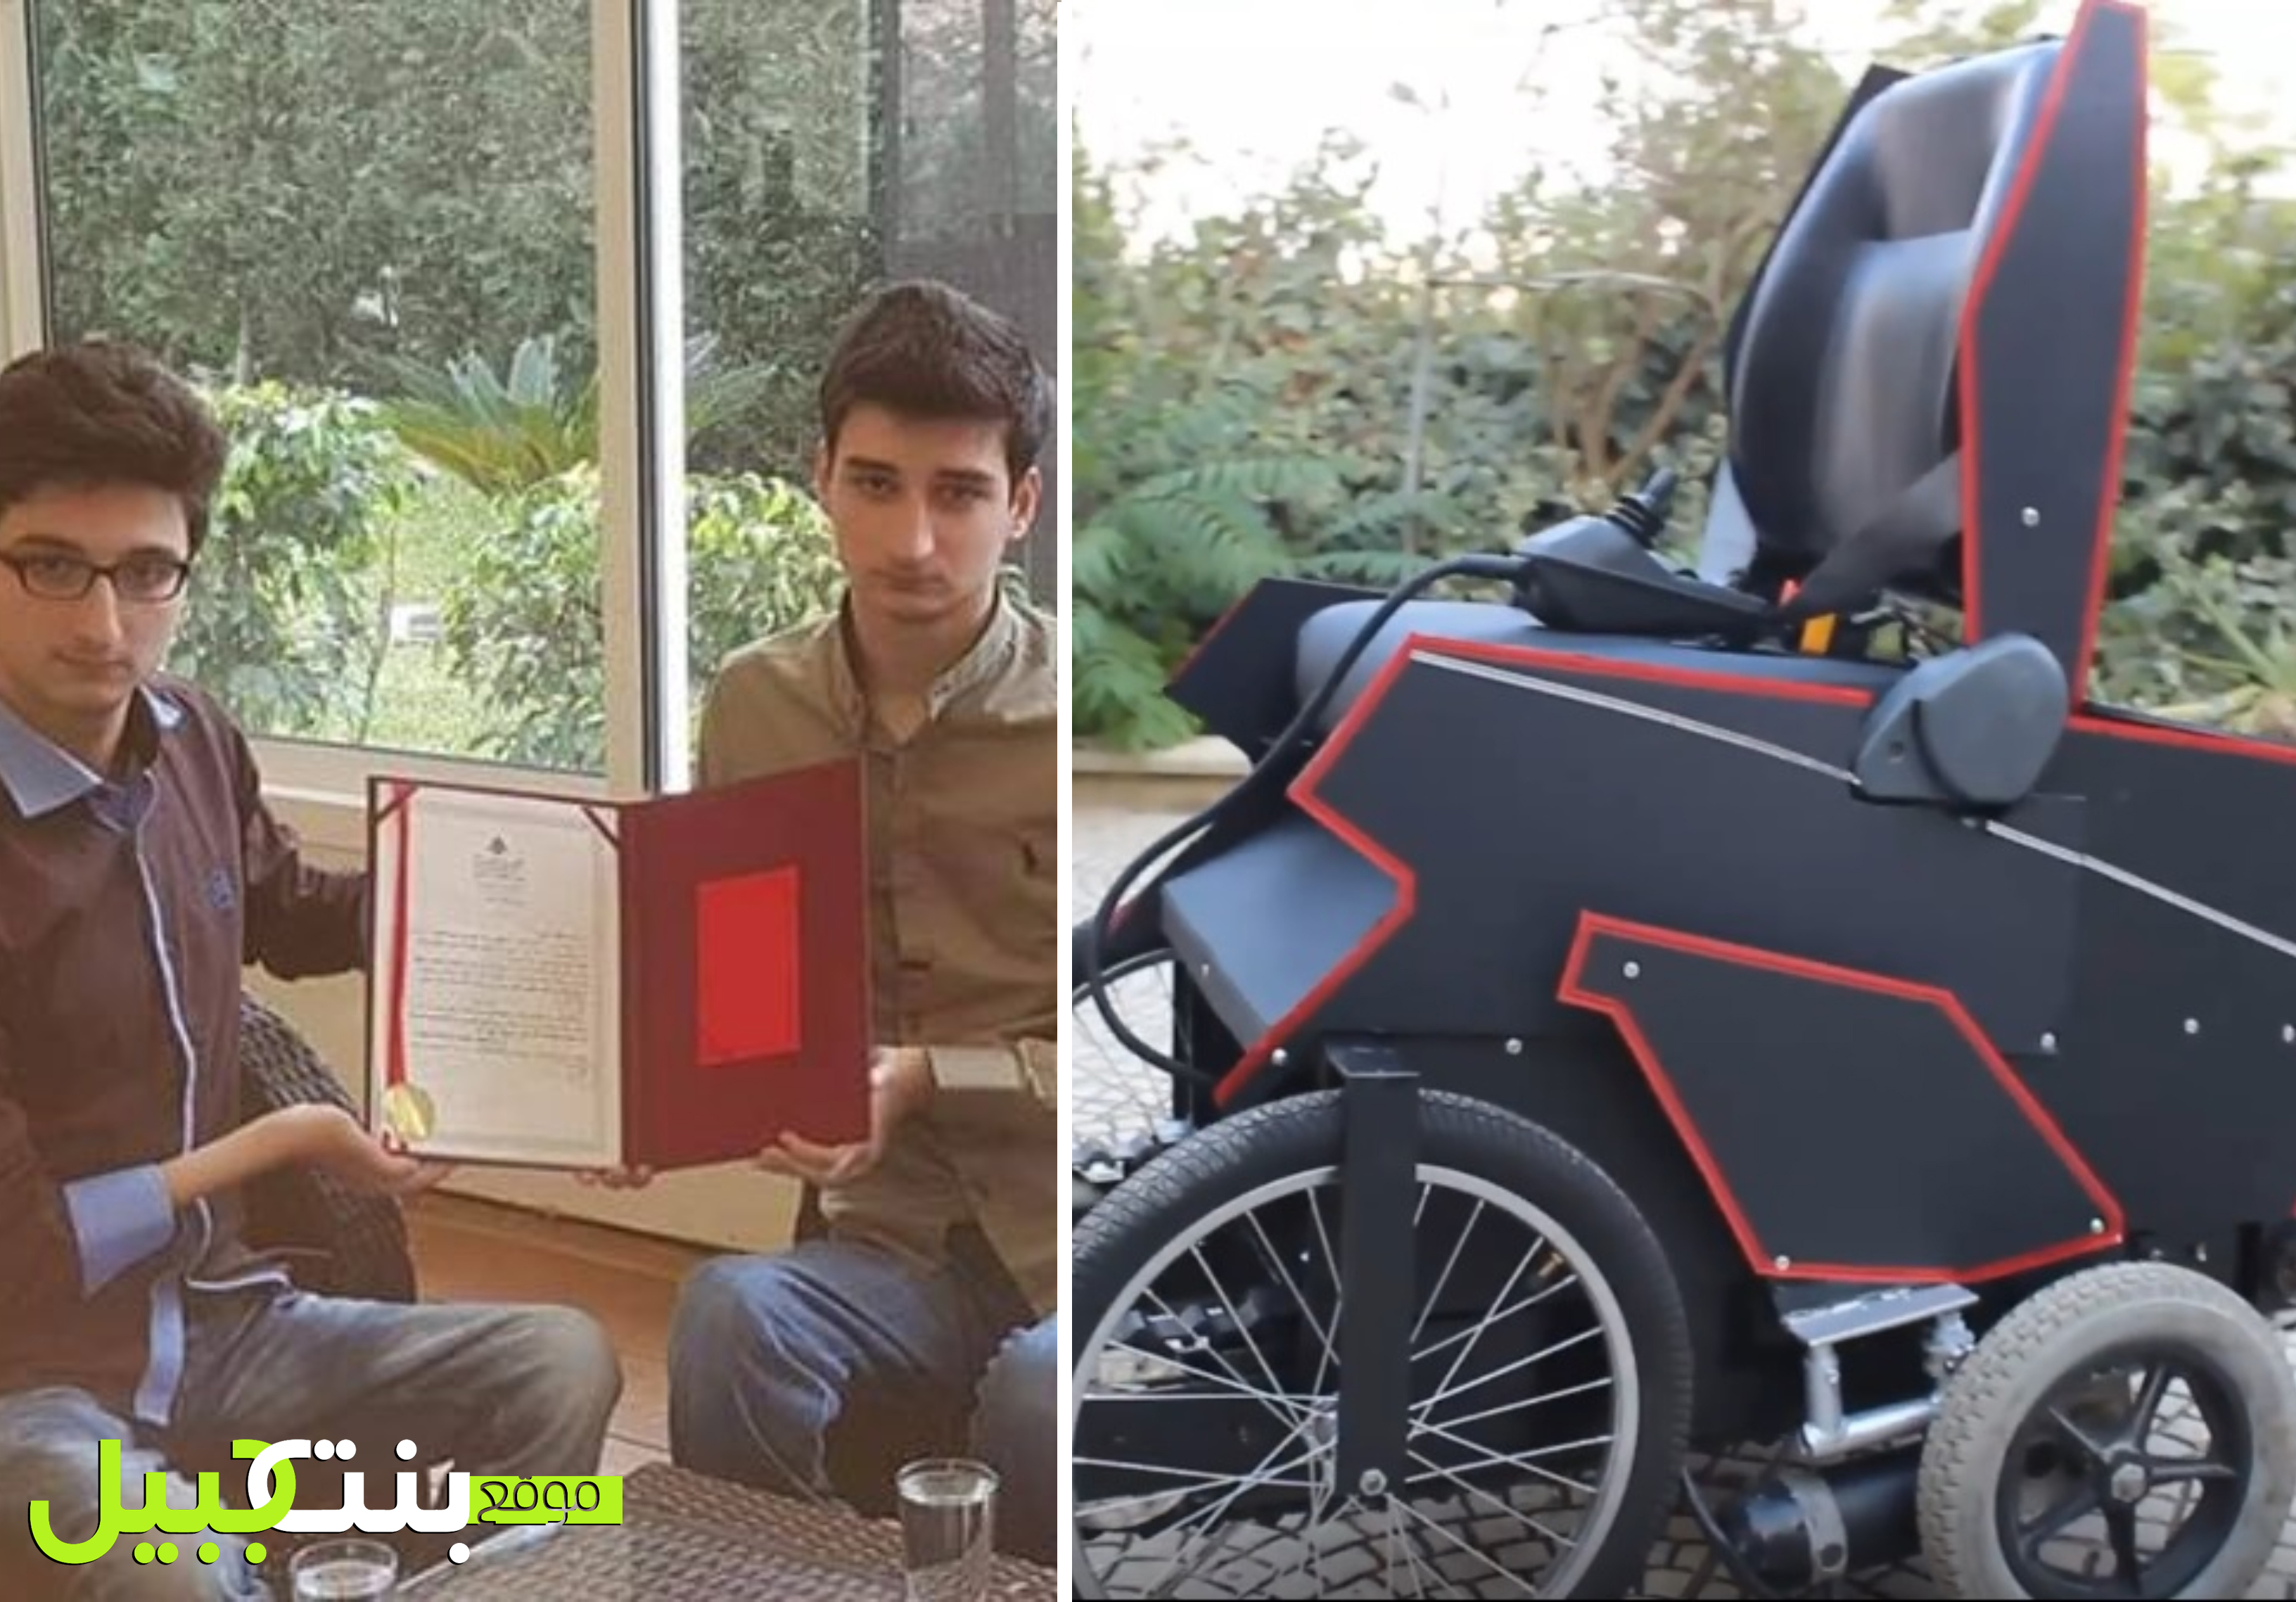 بالفيديو/ الشابين علي وحسين حرب نالا براءة اختراع بعد تحويل كرسيهما المتحرك إلى روبوت ذكي!